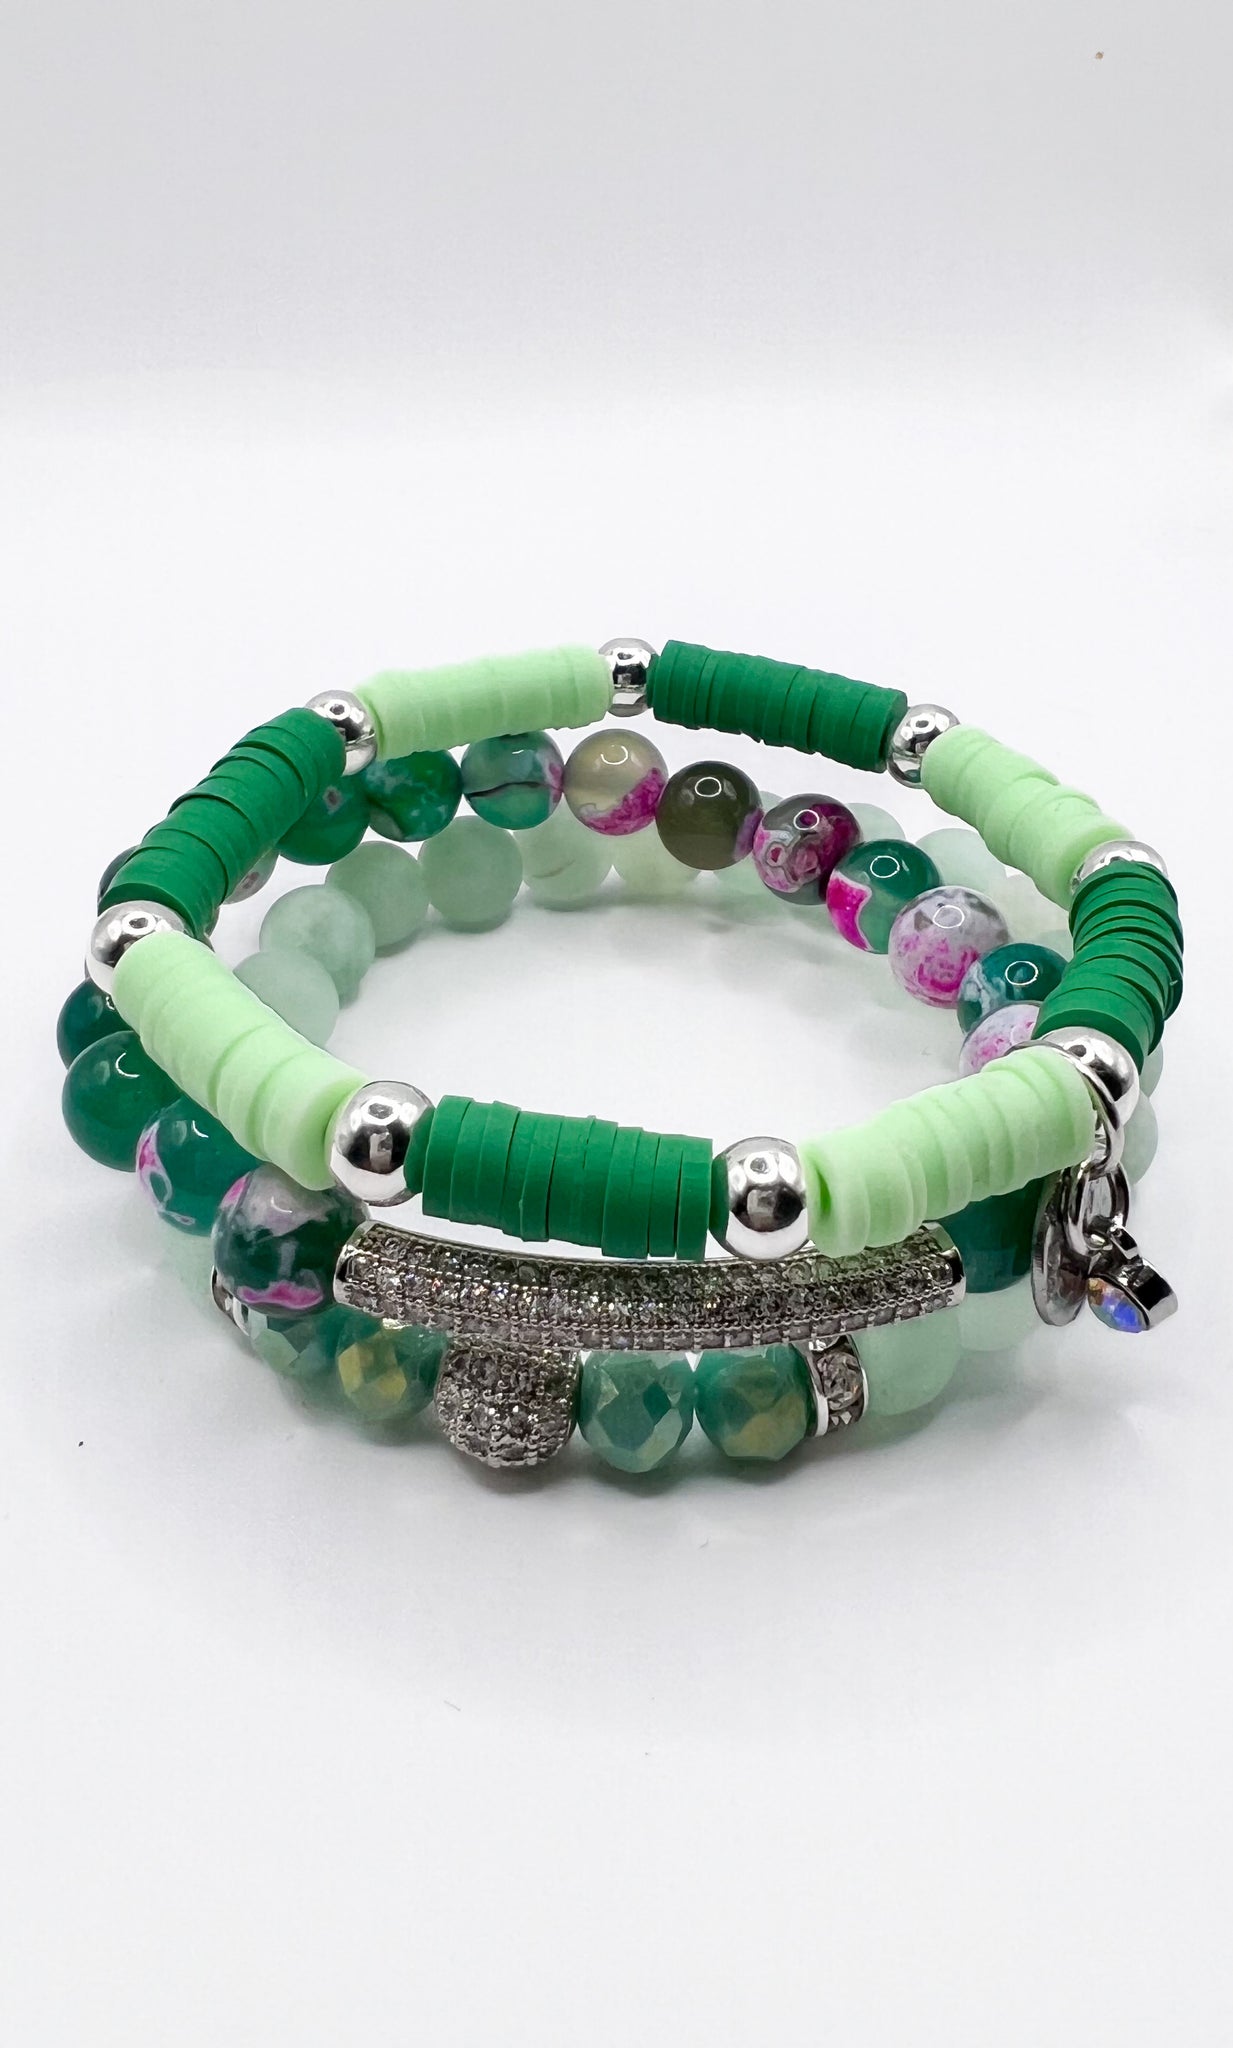 Aesthetic Green Clay Bead Bracelet Set - 1 set - 3 pcs